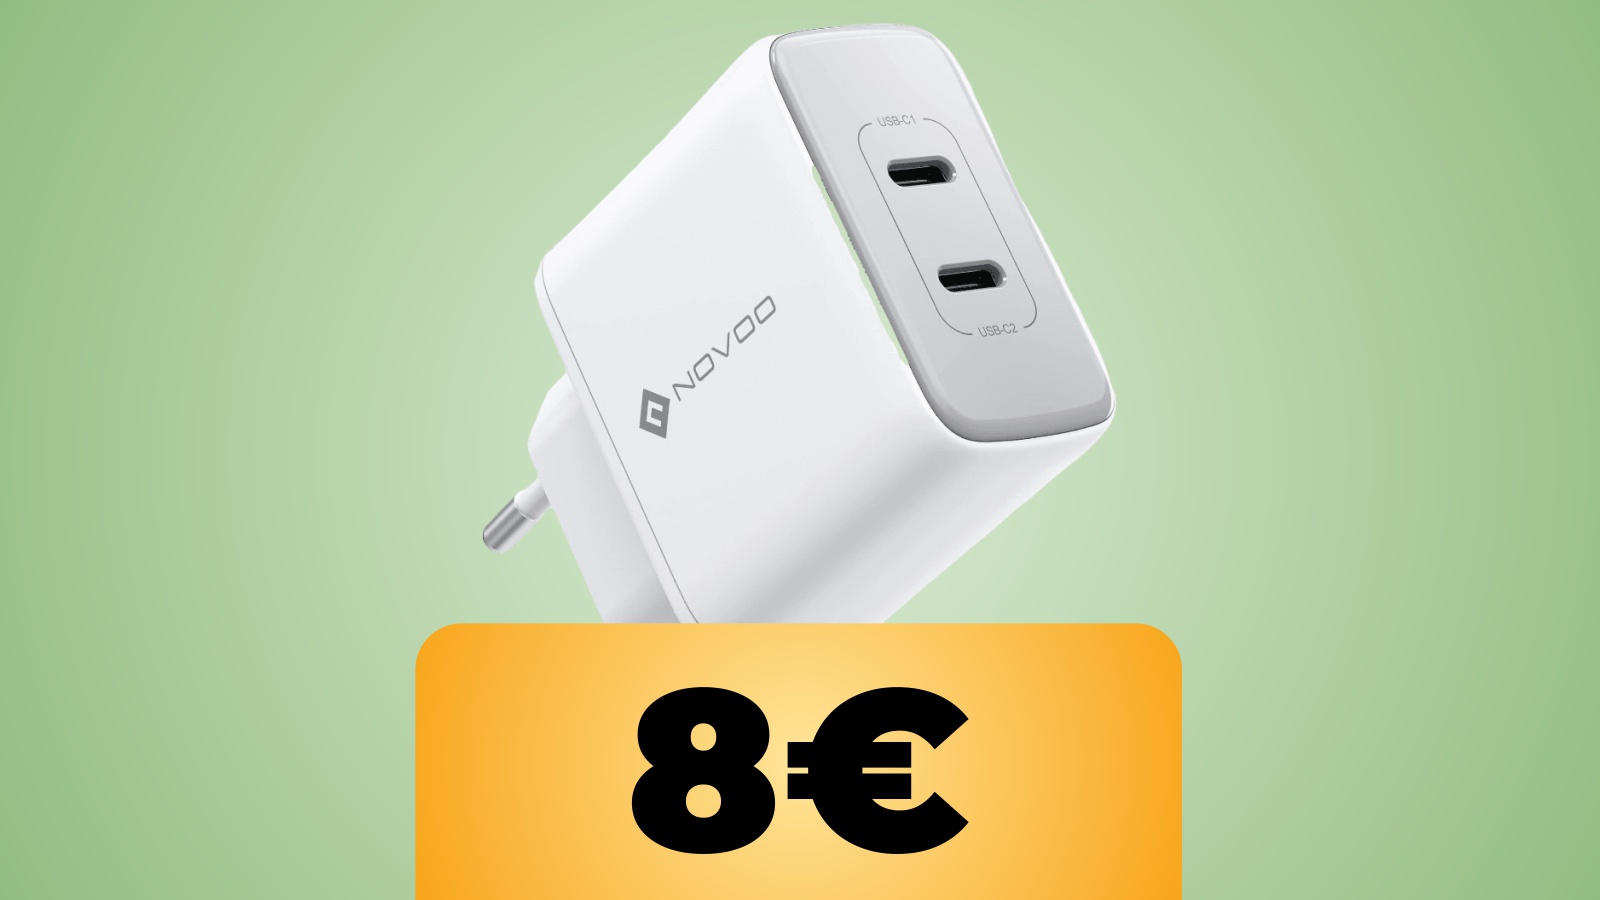 Caricatore USB-C NOVOO 35 W per smartphone, tablet e notebook in sconto su Amazon col coupon